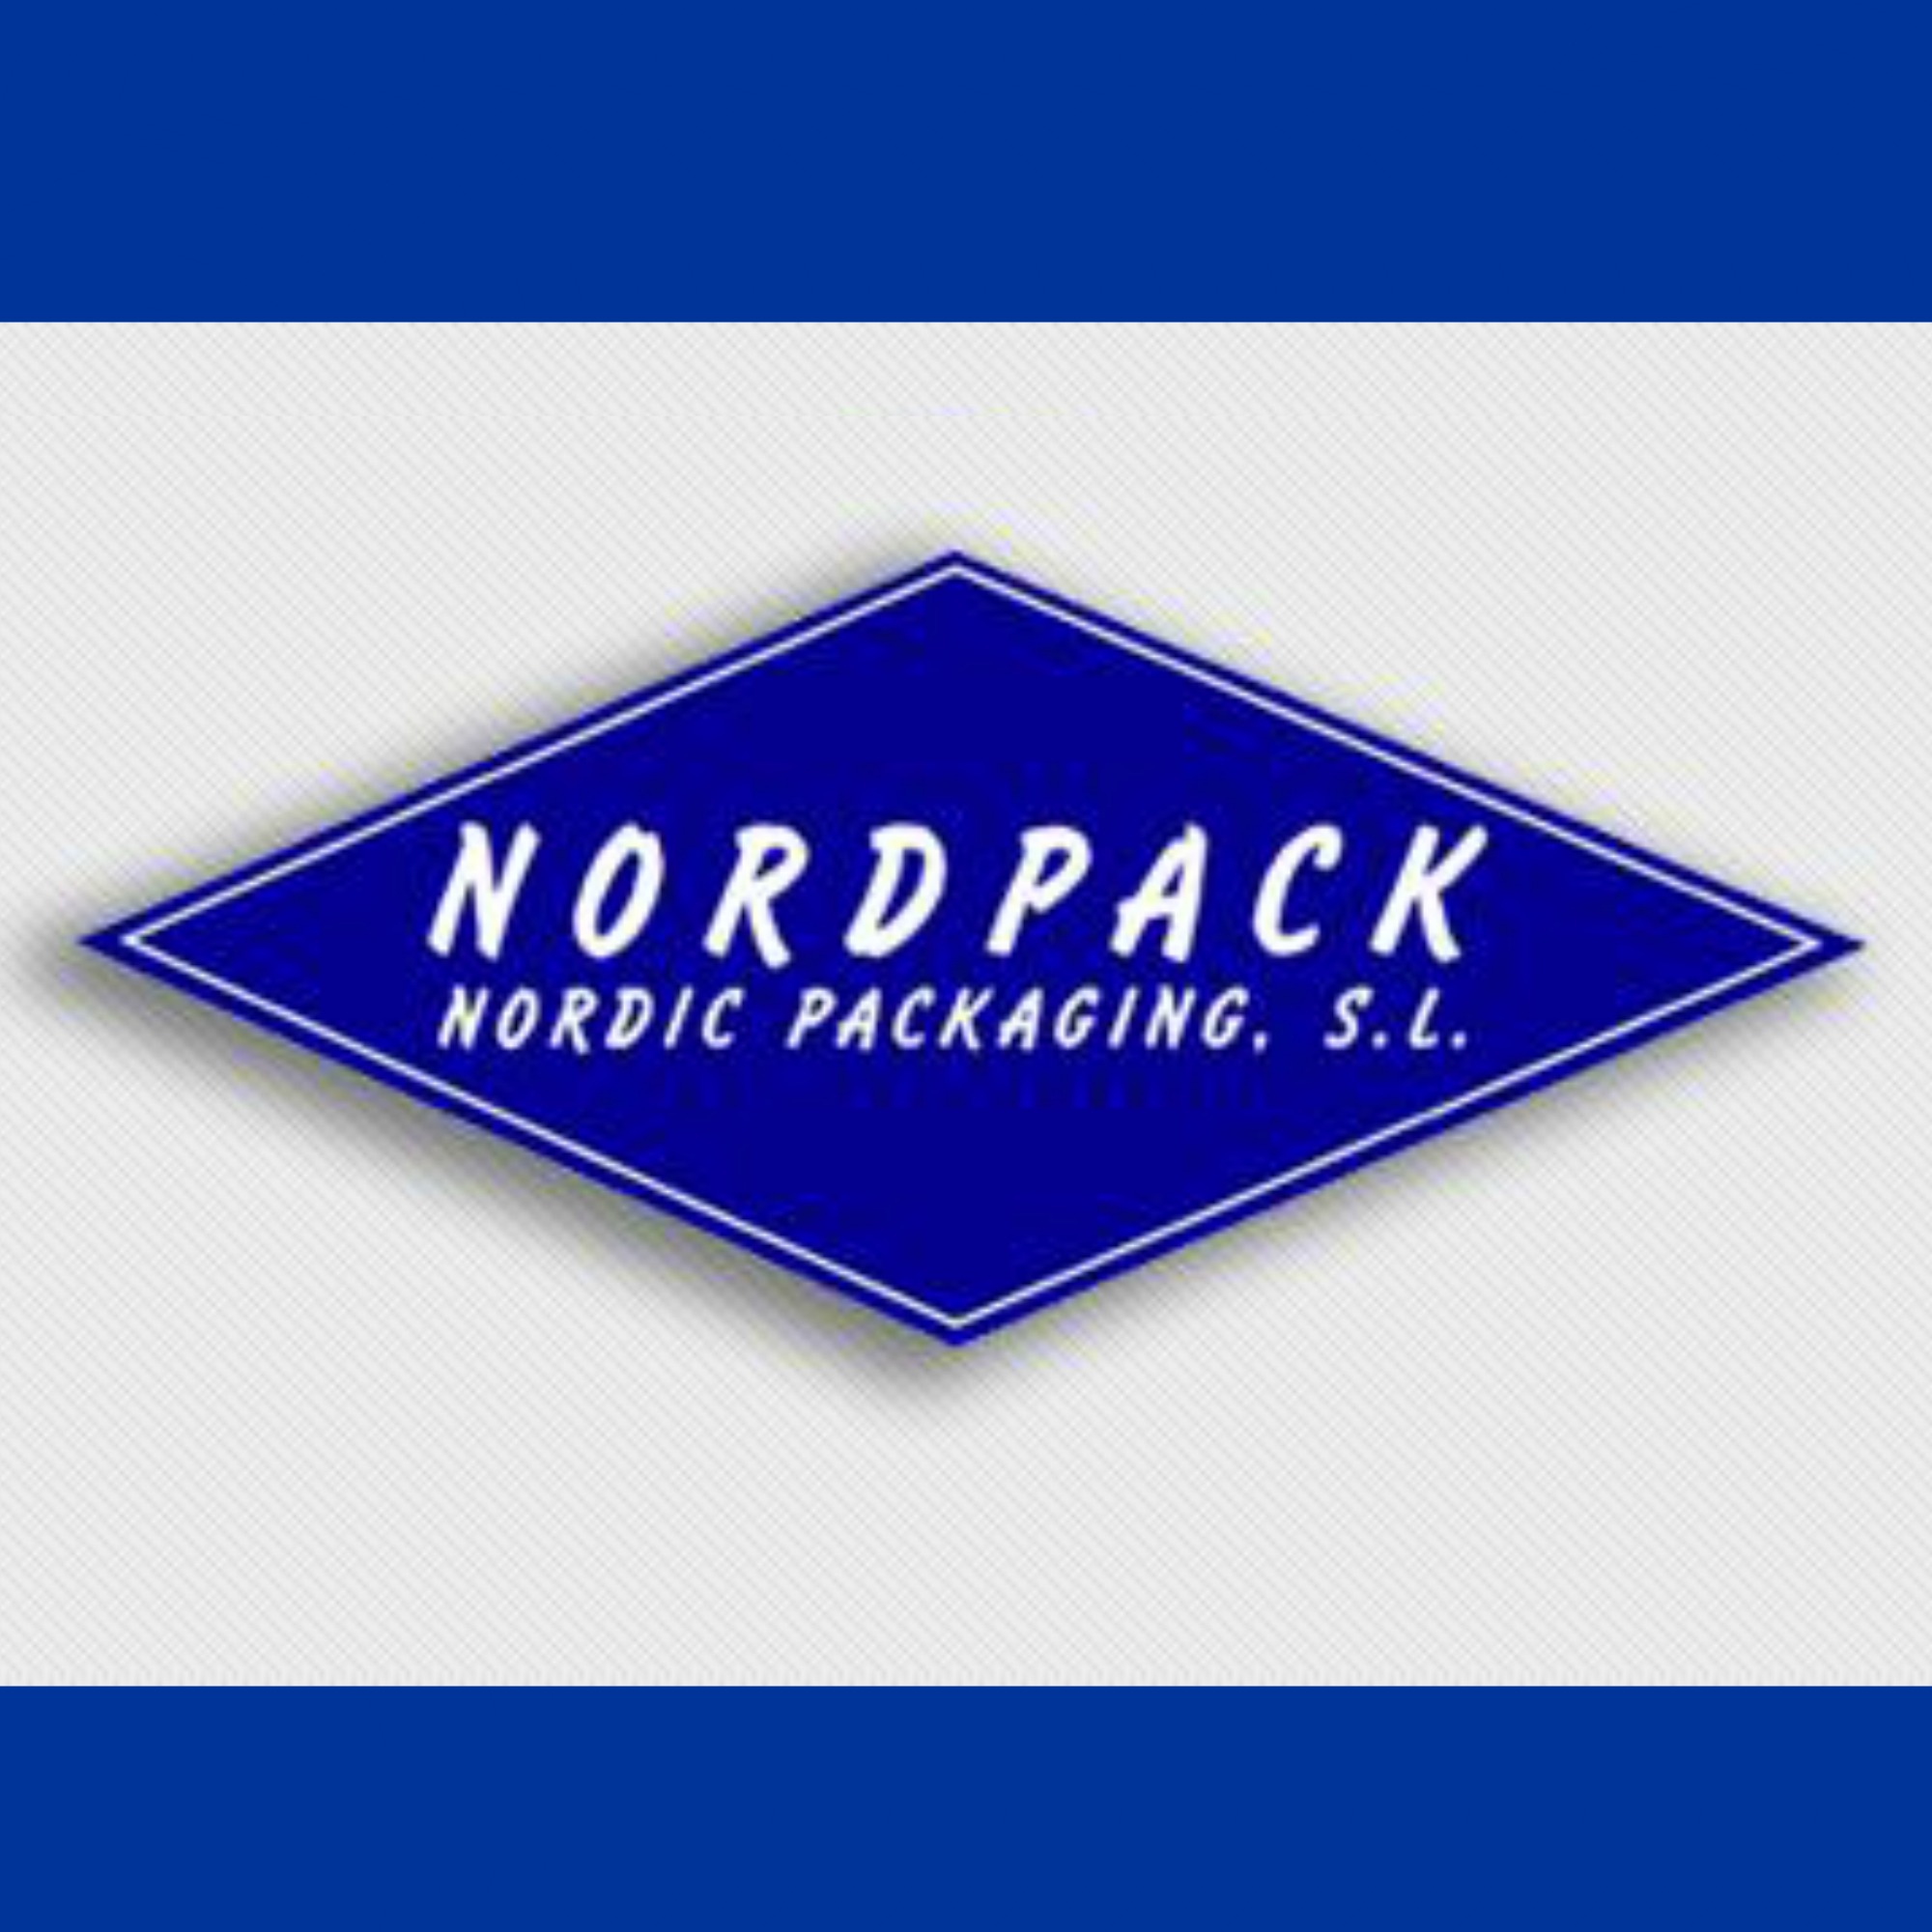 Nordic Packaging-Nordpack SL